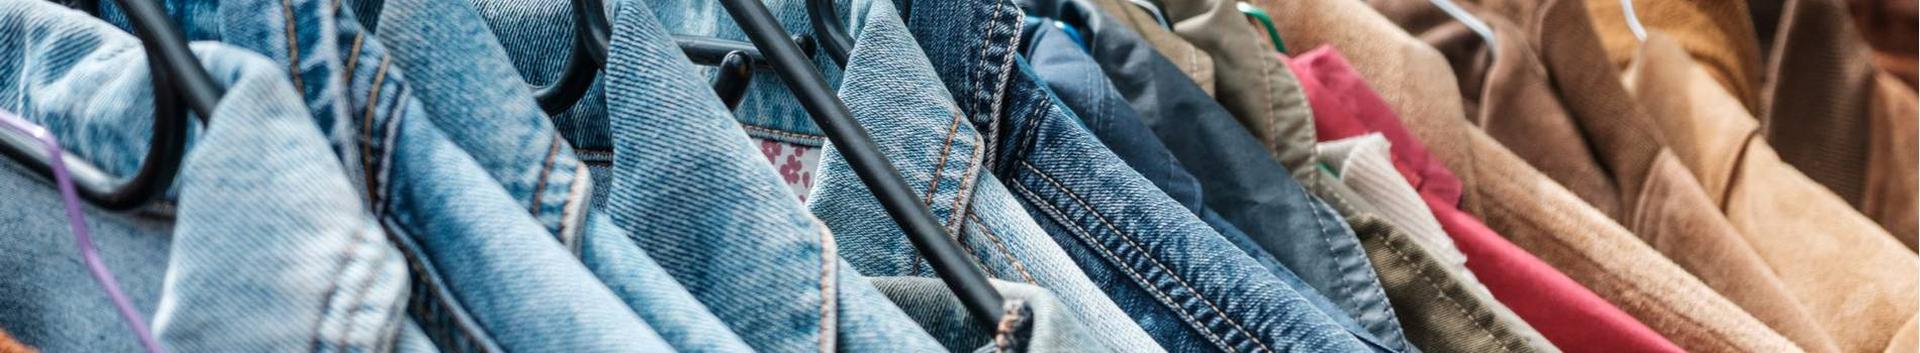 Suurim mainega ettevõte URVE MUREL FIE, maineskoor 180, aktiivseid äriseoseid 2. Tegutseb peamiselt valdkonnas: Tekstiili, rõivaste jaemüük.